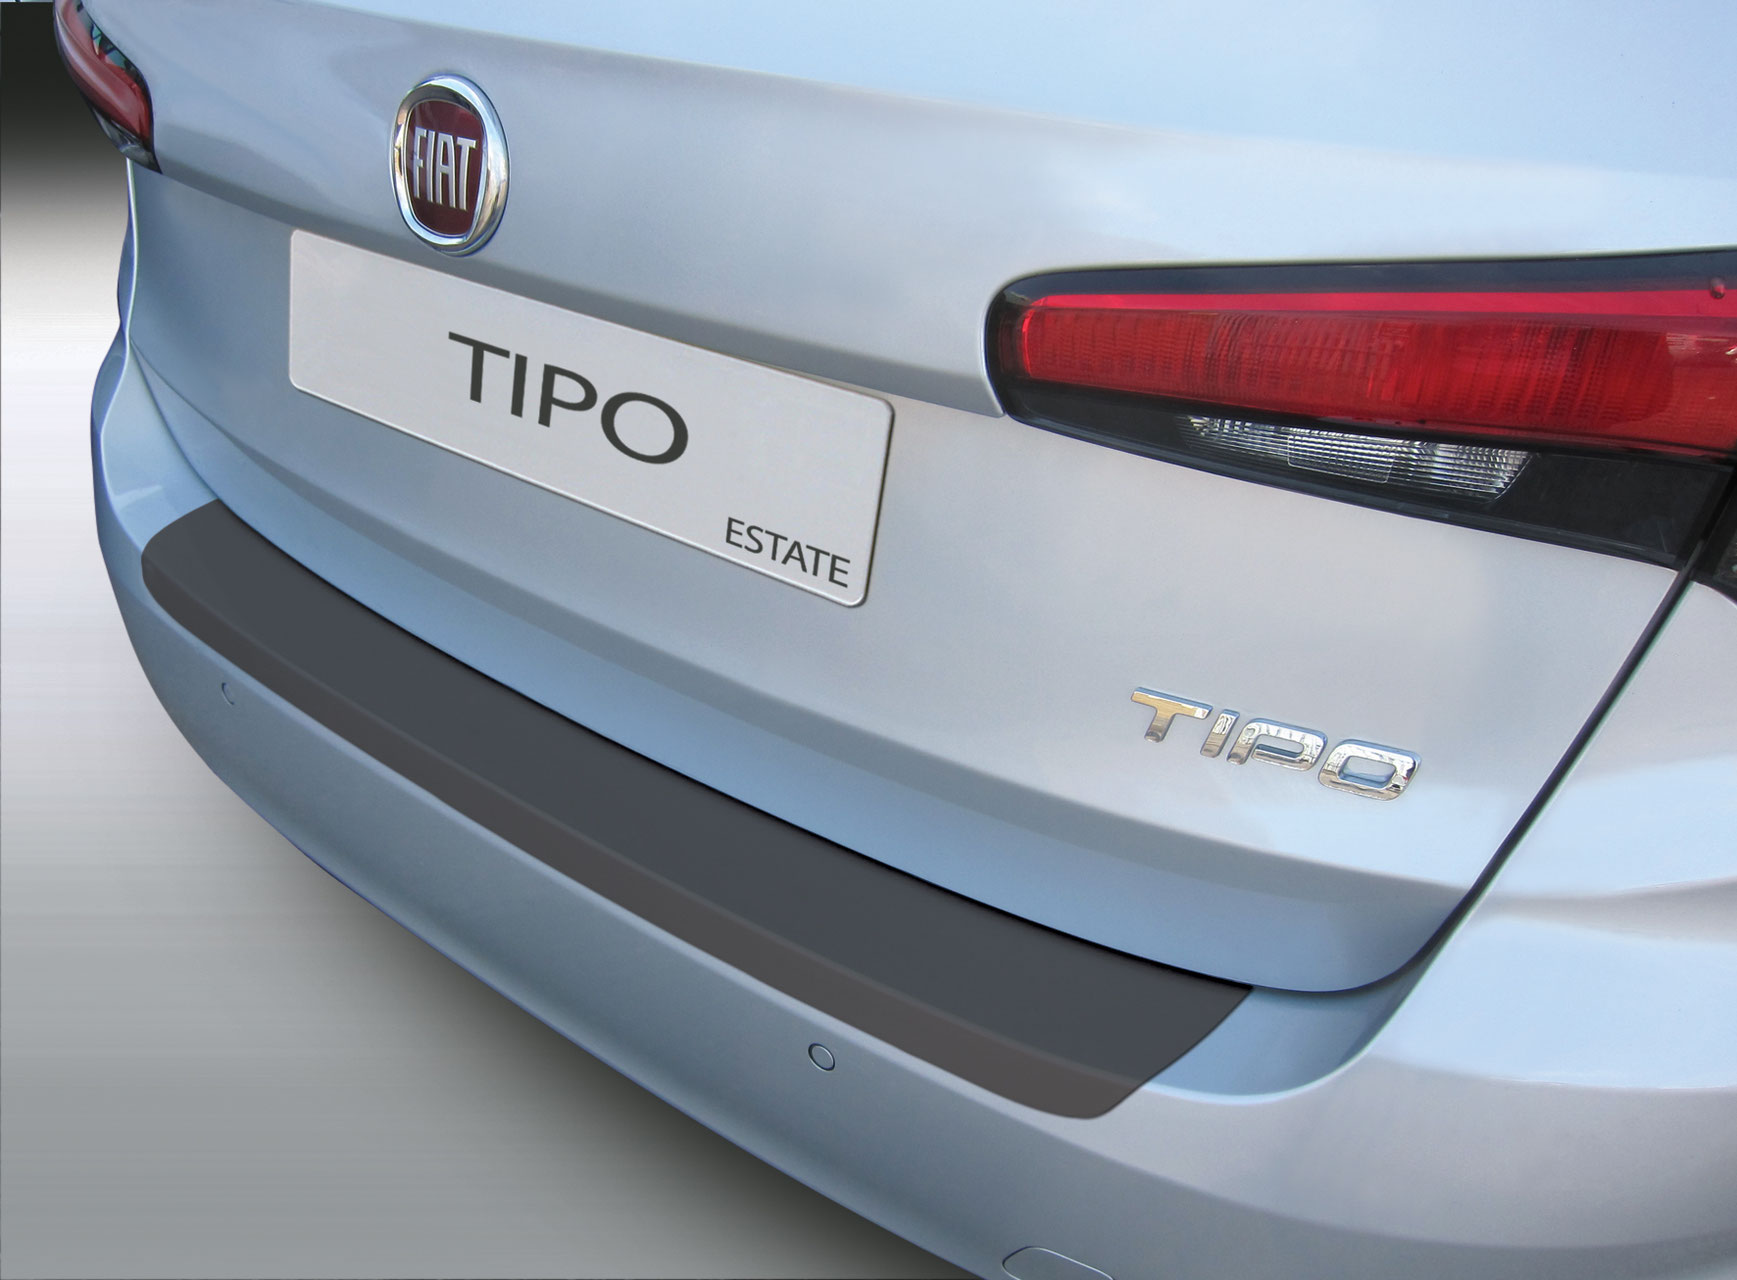 Ladekantenschutz für Fiat Tipo - Schutz für die Ladekante Ihres Fahrzeuges